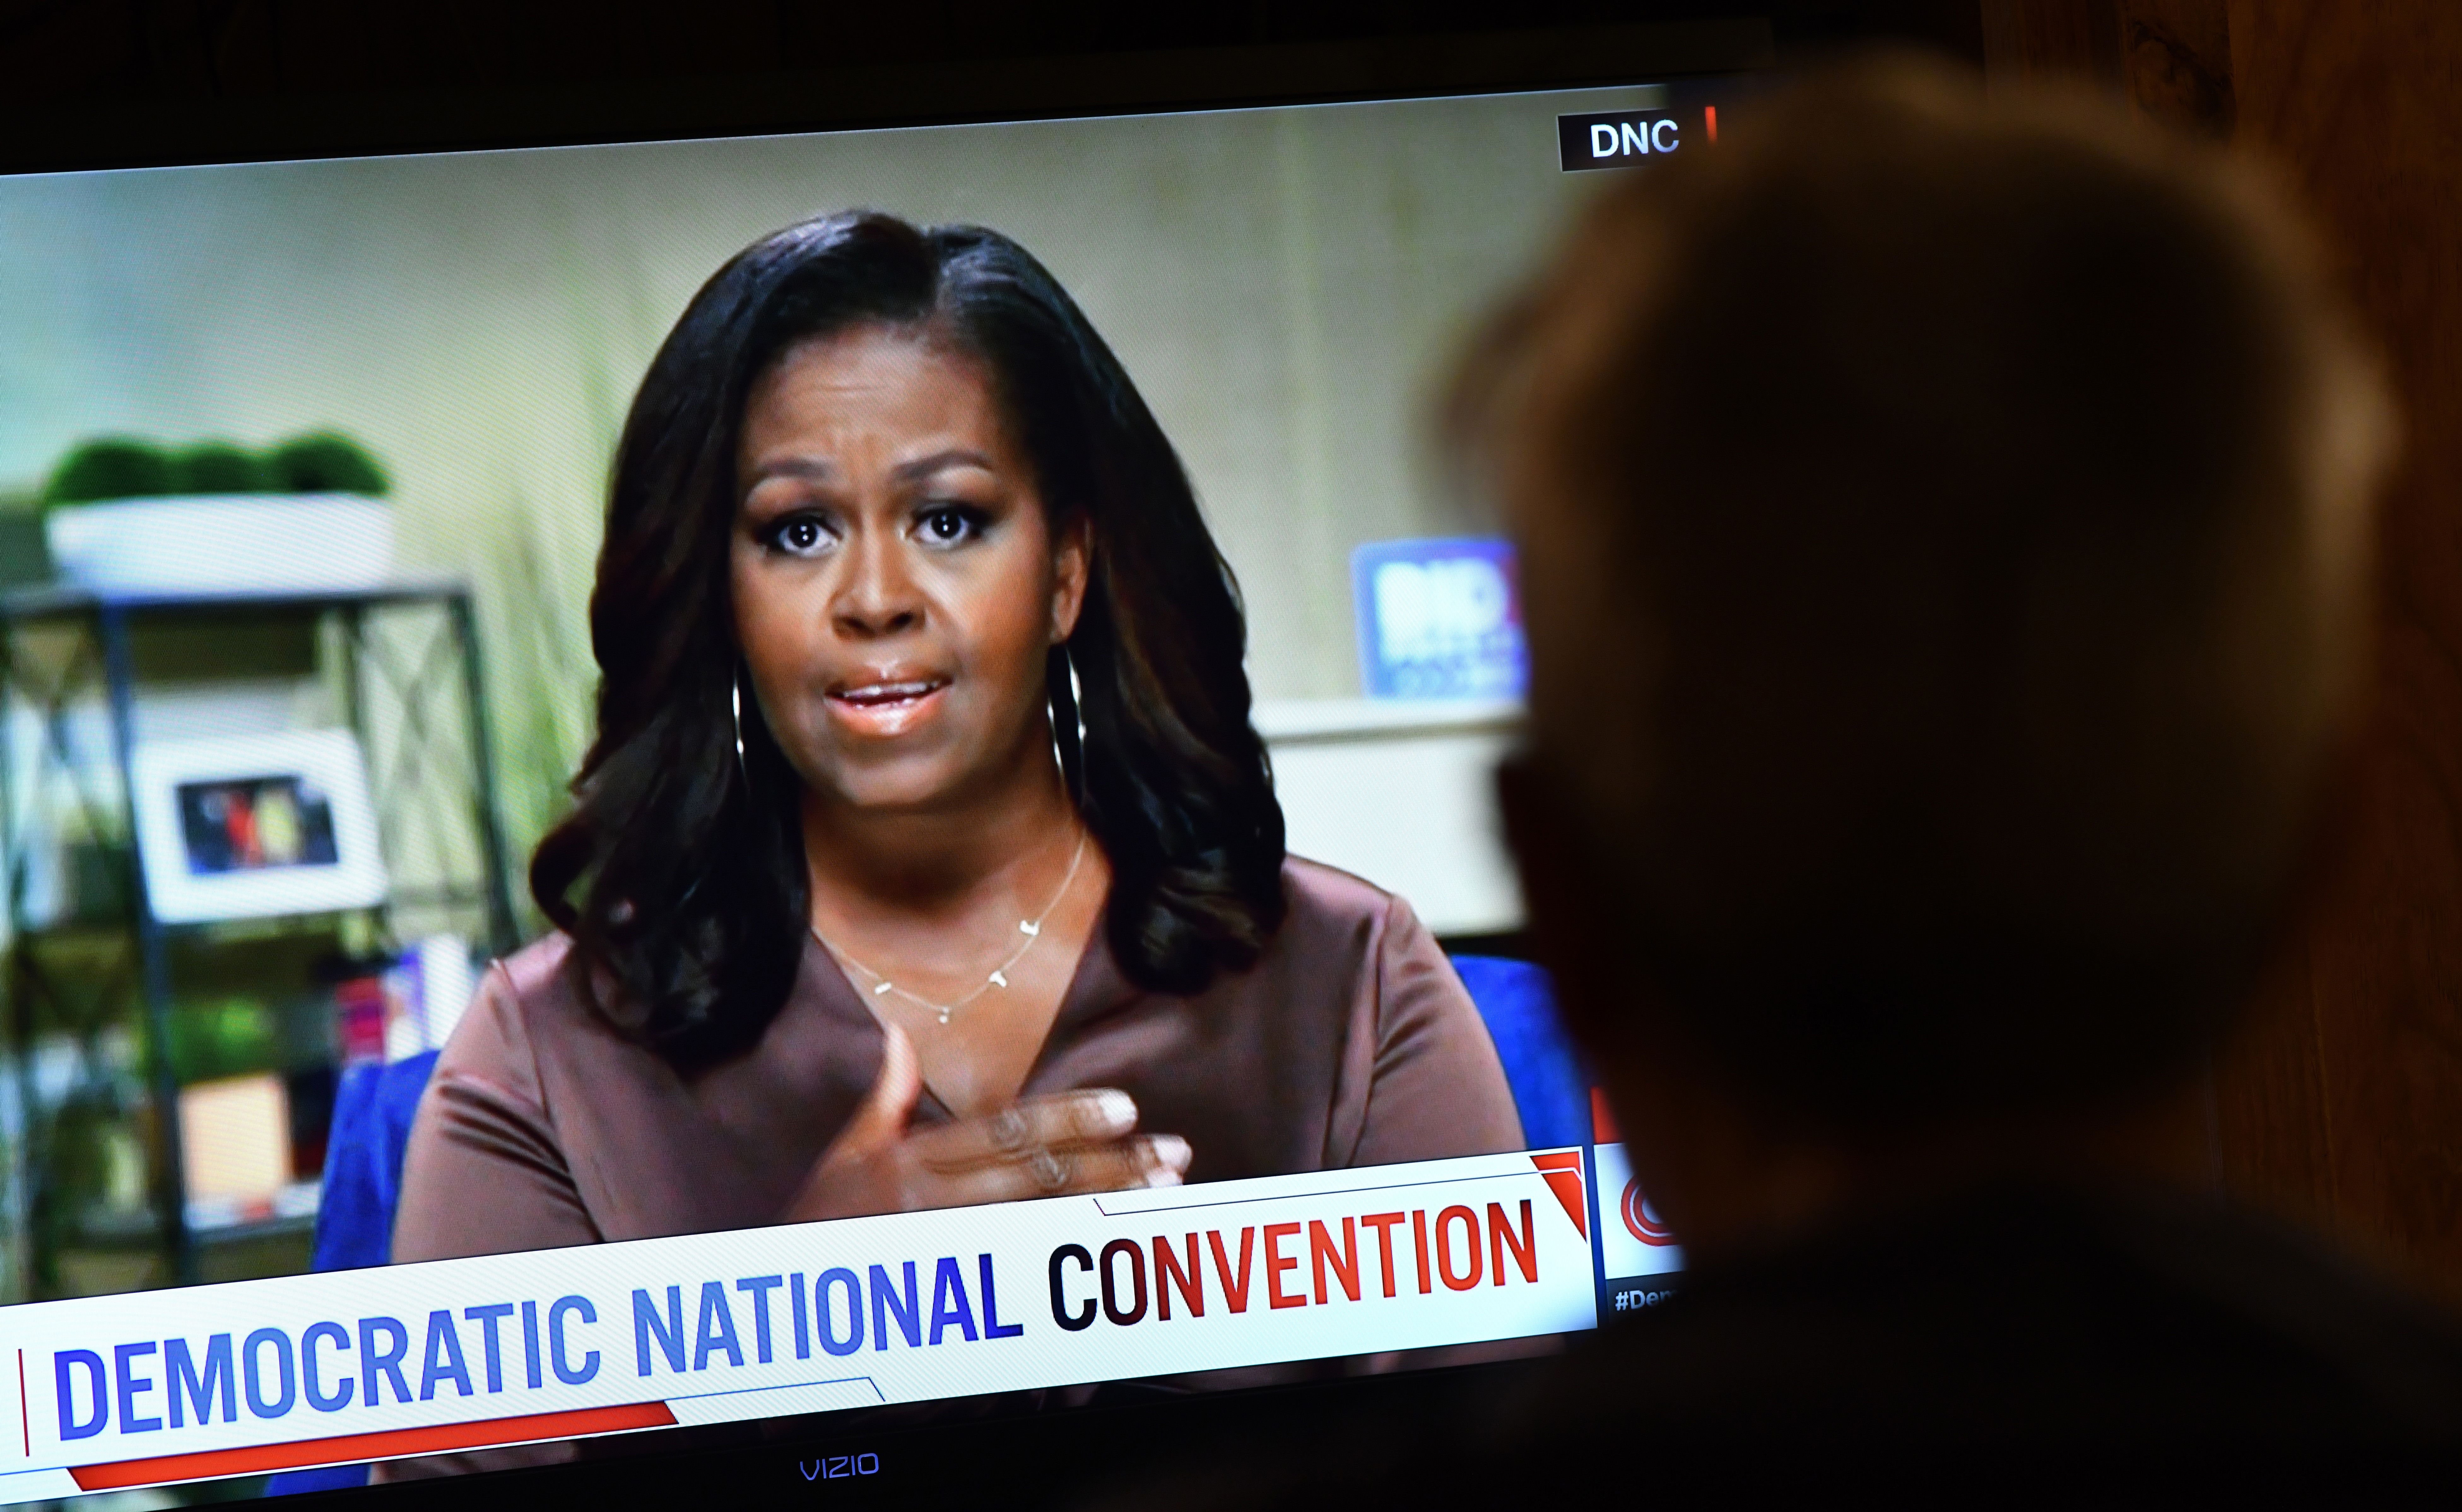 Op deze foto is voormalig First Lady Michelle Obama te zien tijdens de Democratic National Convention in Amerika.